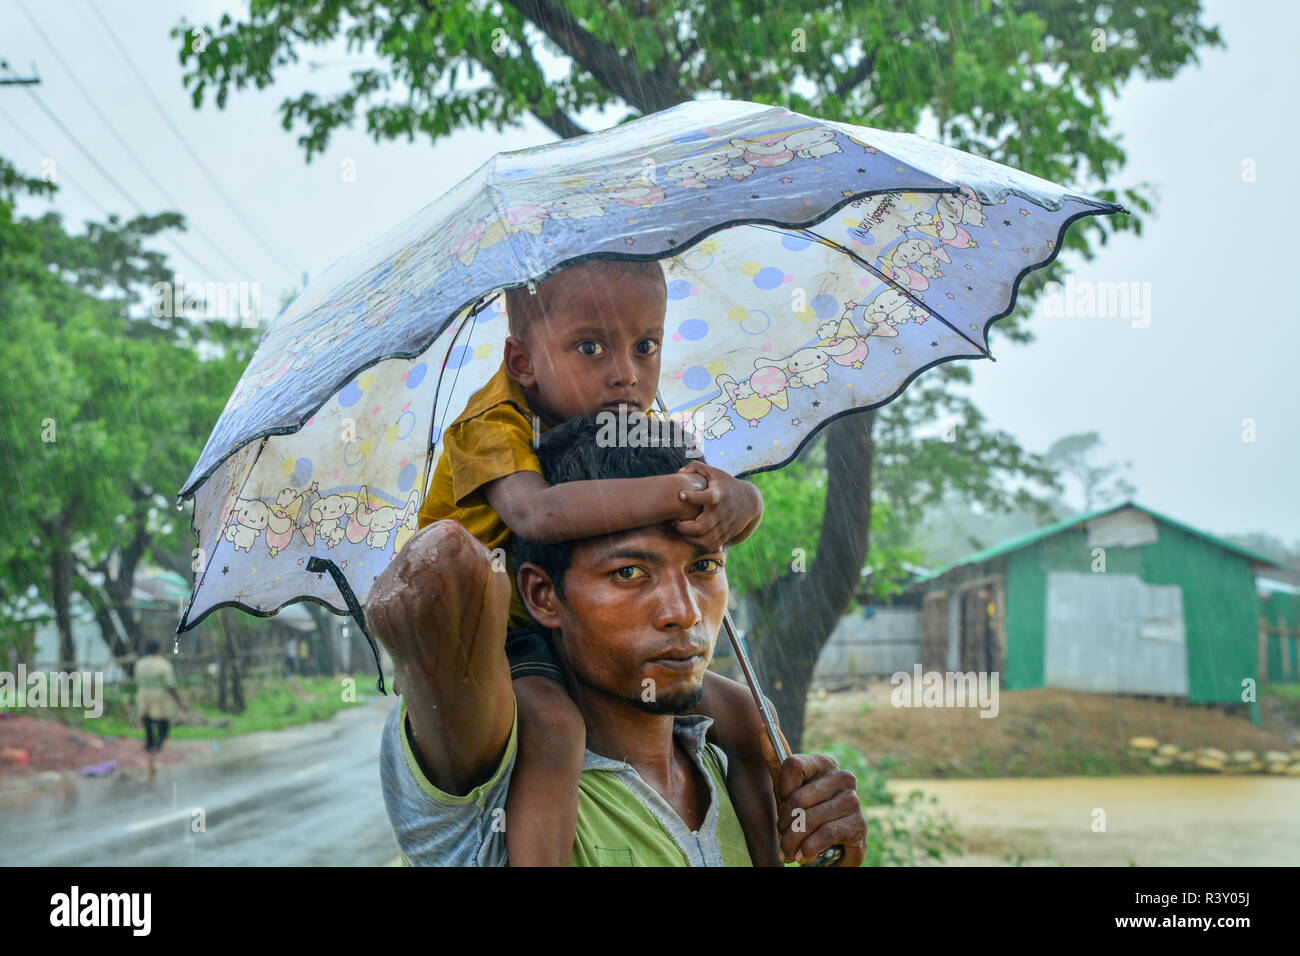 Rohingya refugees in bangladesh Stock Photo